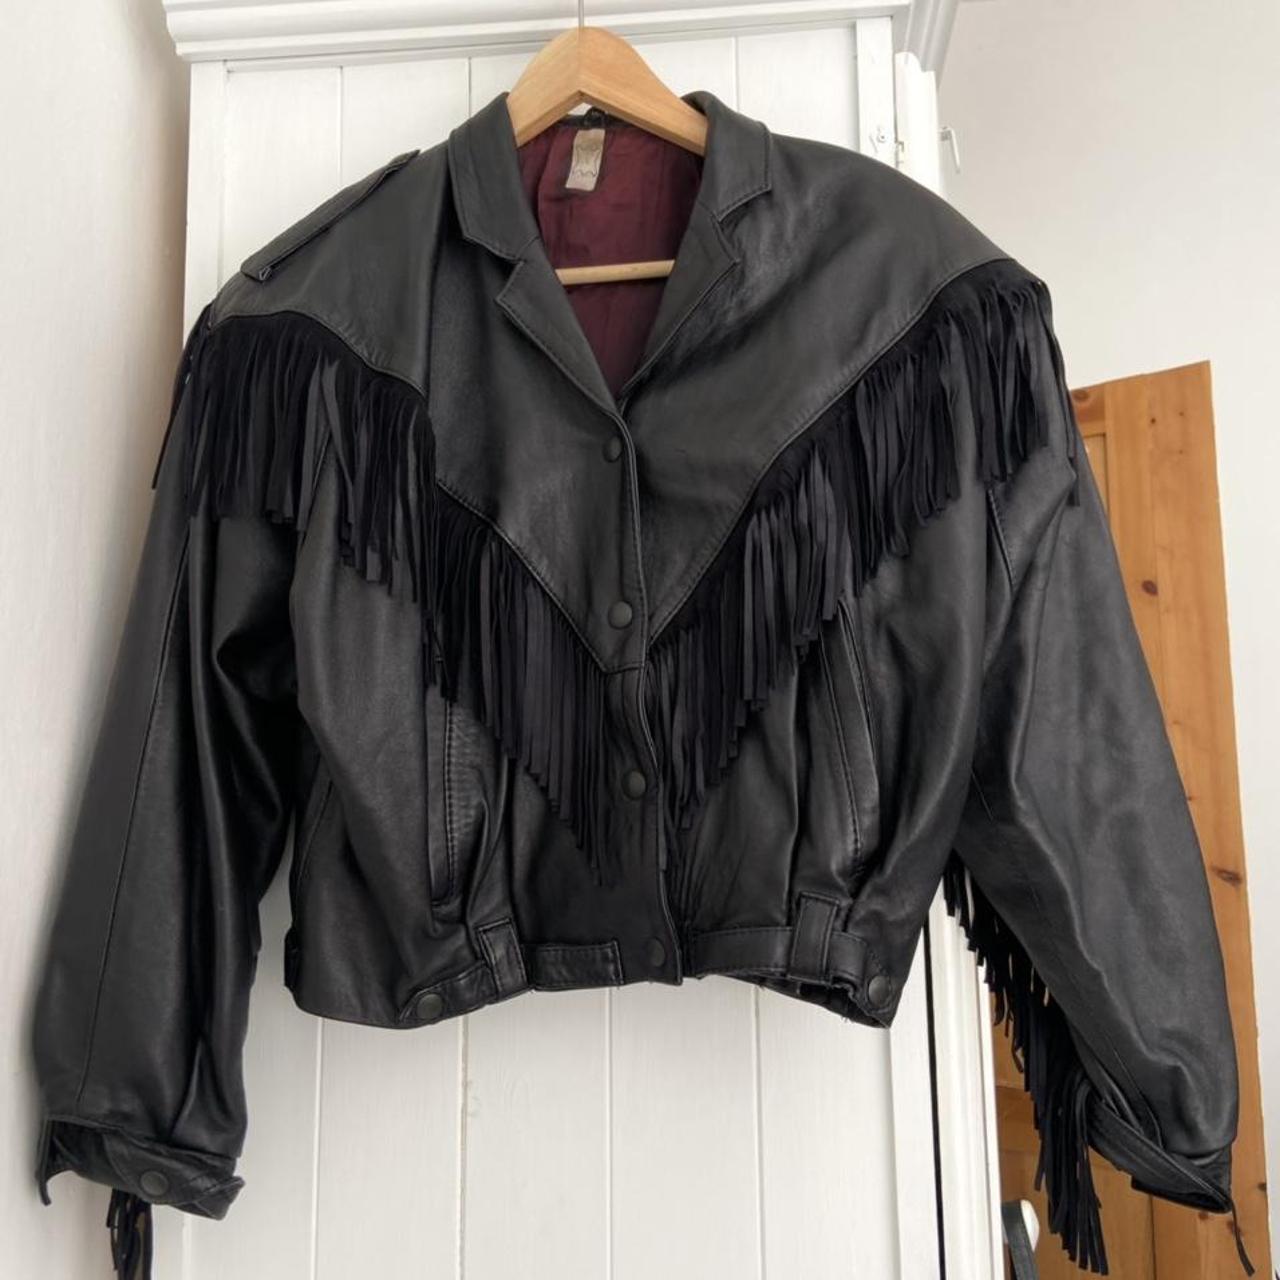 Vintage Leather Fringe Jacket Size Small 8/10... - Depop